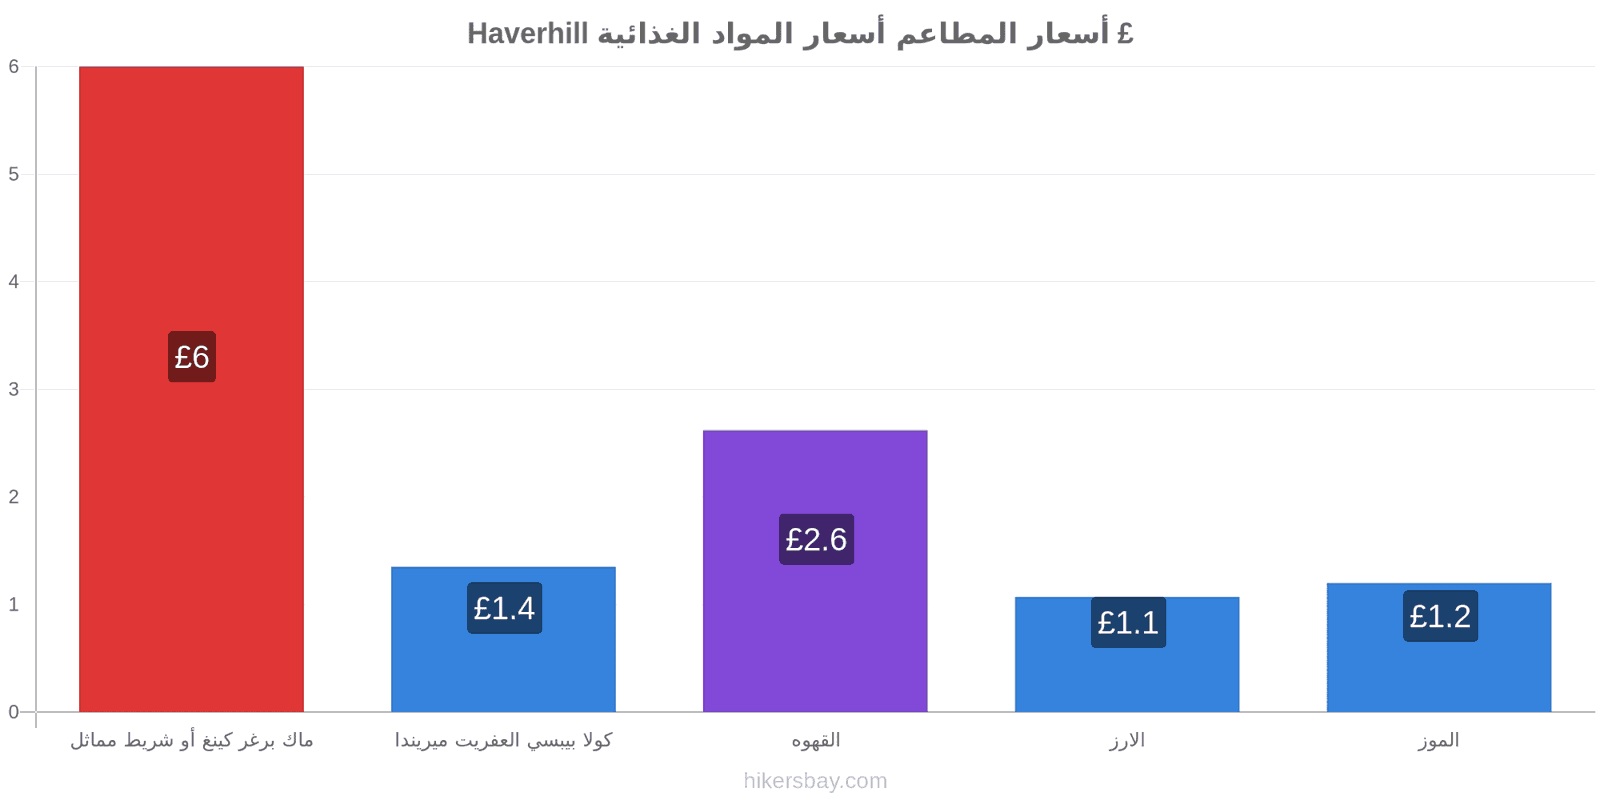 Haverhill تغييرات الأسعار hikersbay.com